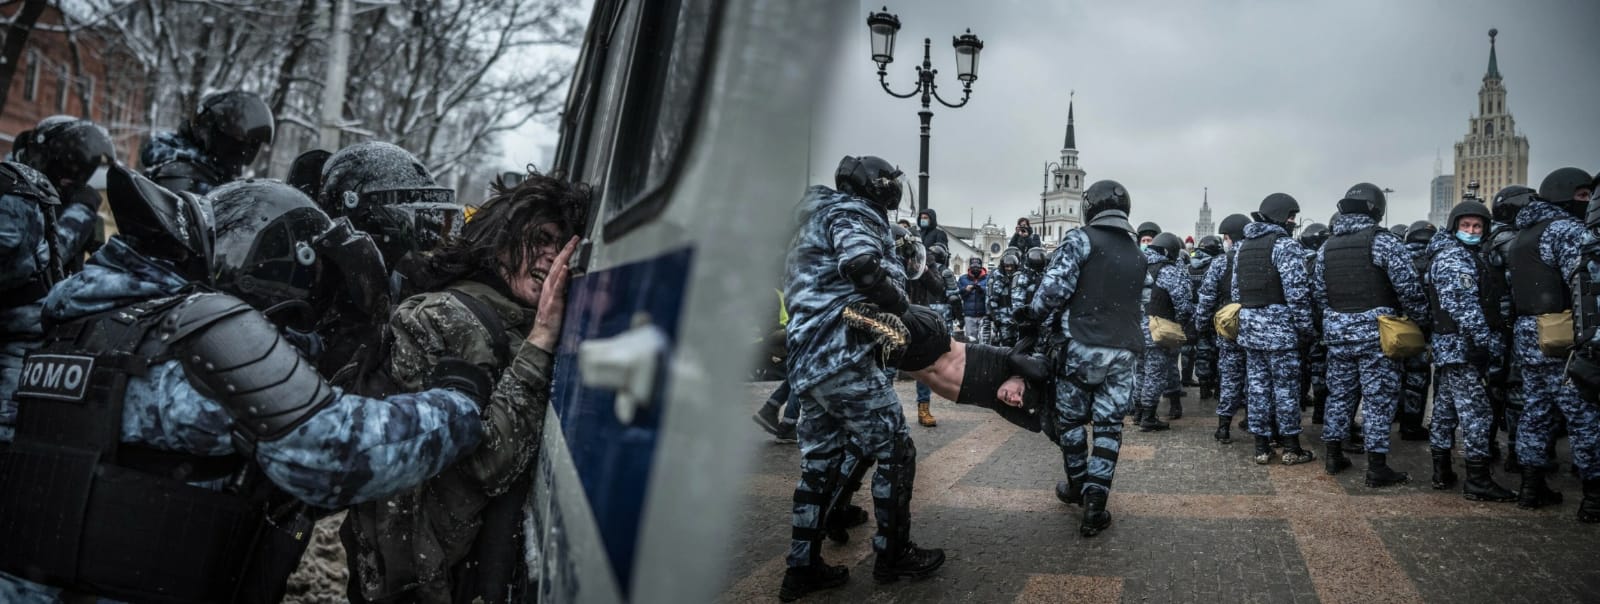 Rus polisinden göstericilere sokak ortasında elektrik işkencesi (Video)